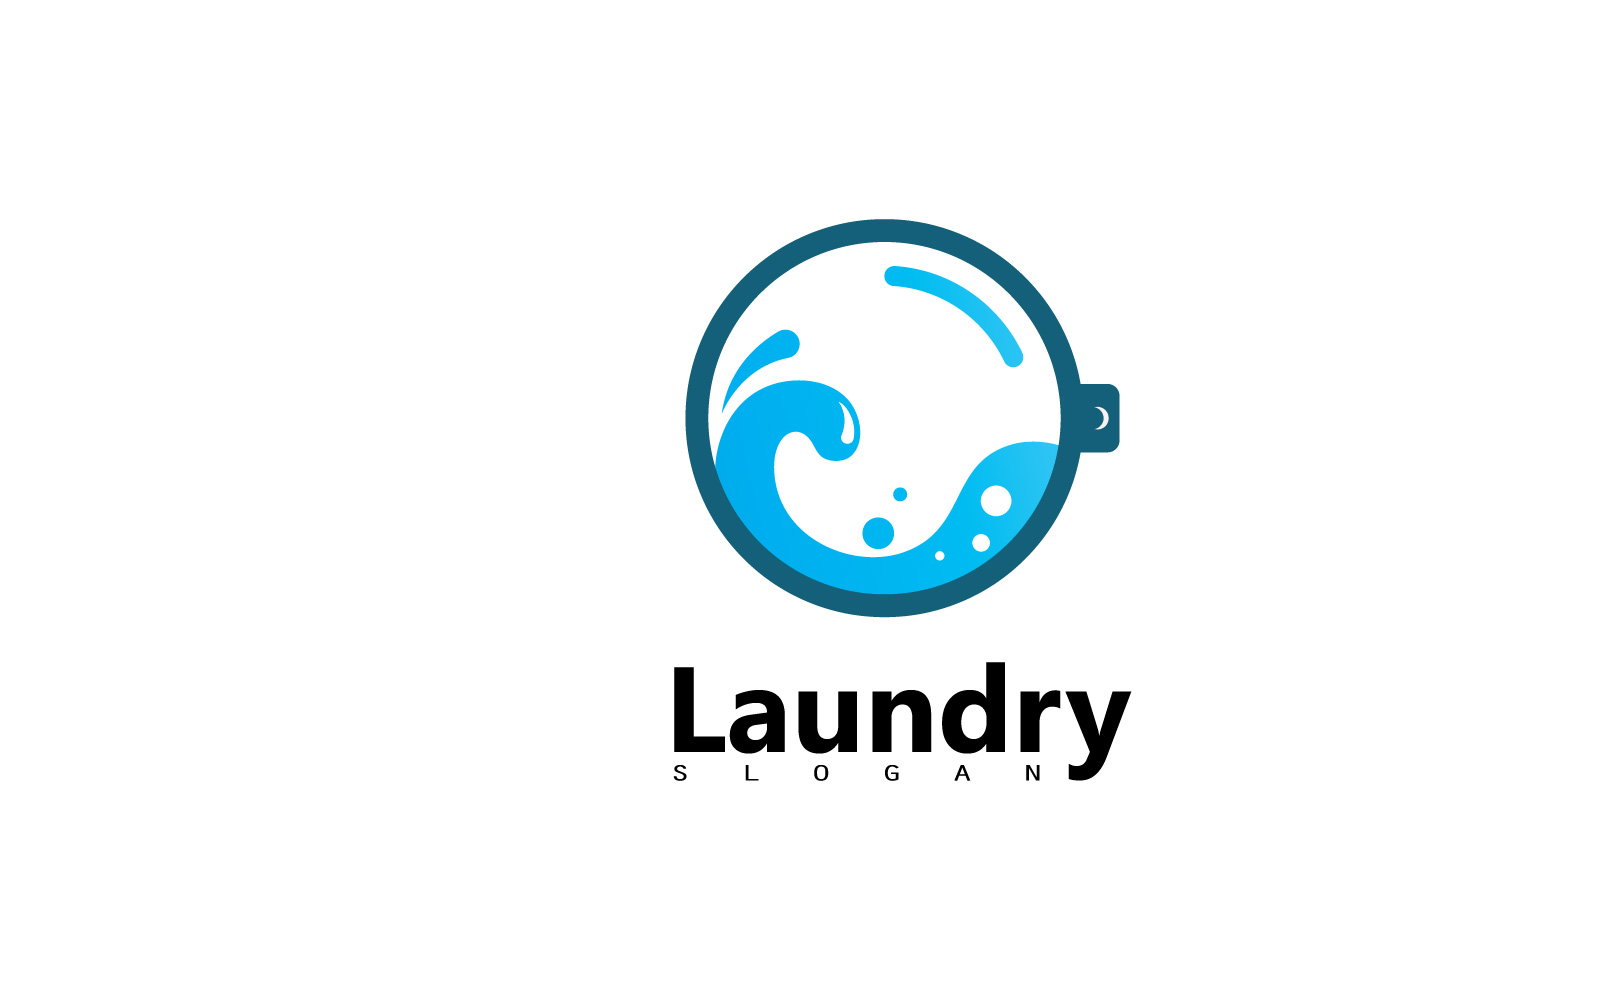 Washing machine laundry icon logo design V4